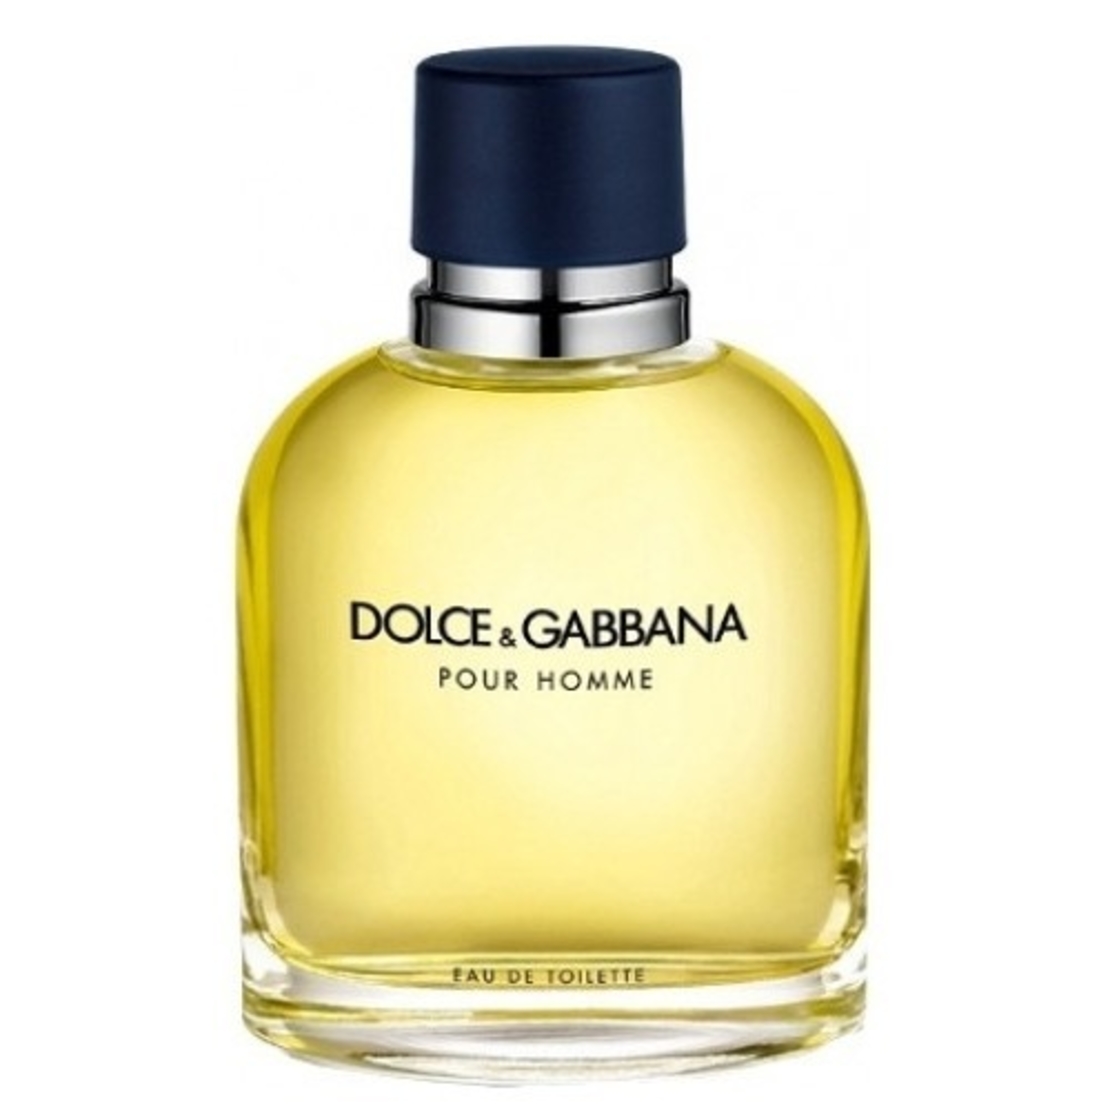 Дольче габбана пур хом. Dolce Gabbana 125ml pour homme. Dolce&Gabbana pour homme туалетная вода 125 мл. Dolce&Gabbana men 75ml EDT. Dolce Gabbana pour homme 2.